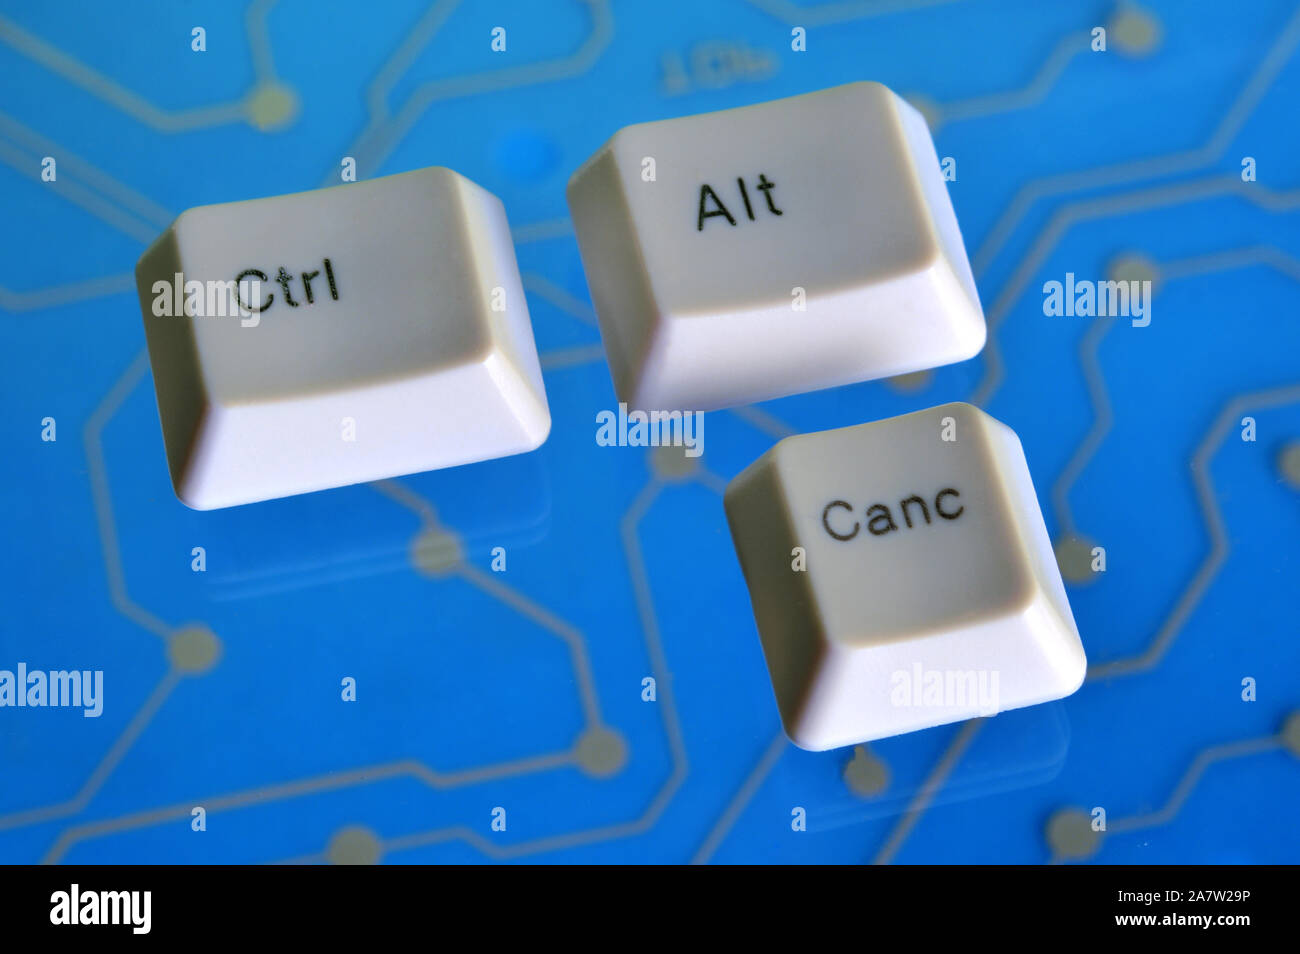 Die Tasten der Tastatur Form das Wort CTRL ALT ANNU auf Blau-Stromkreis im Hintergrund Stockfoto